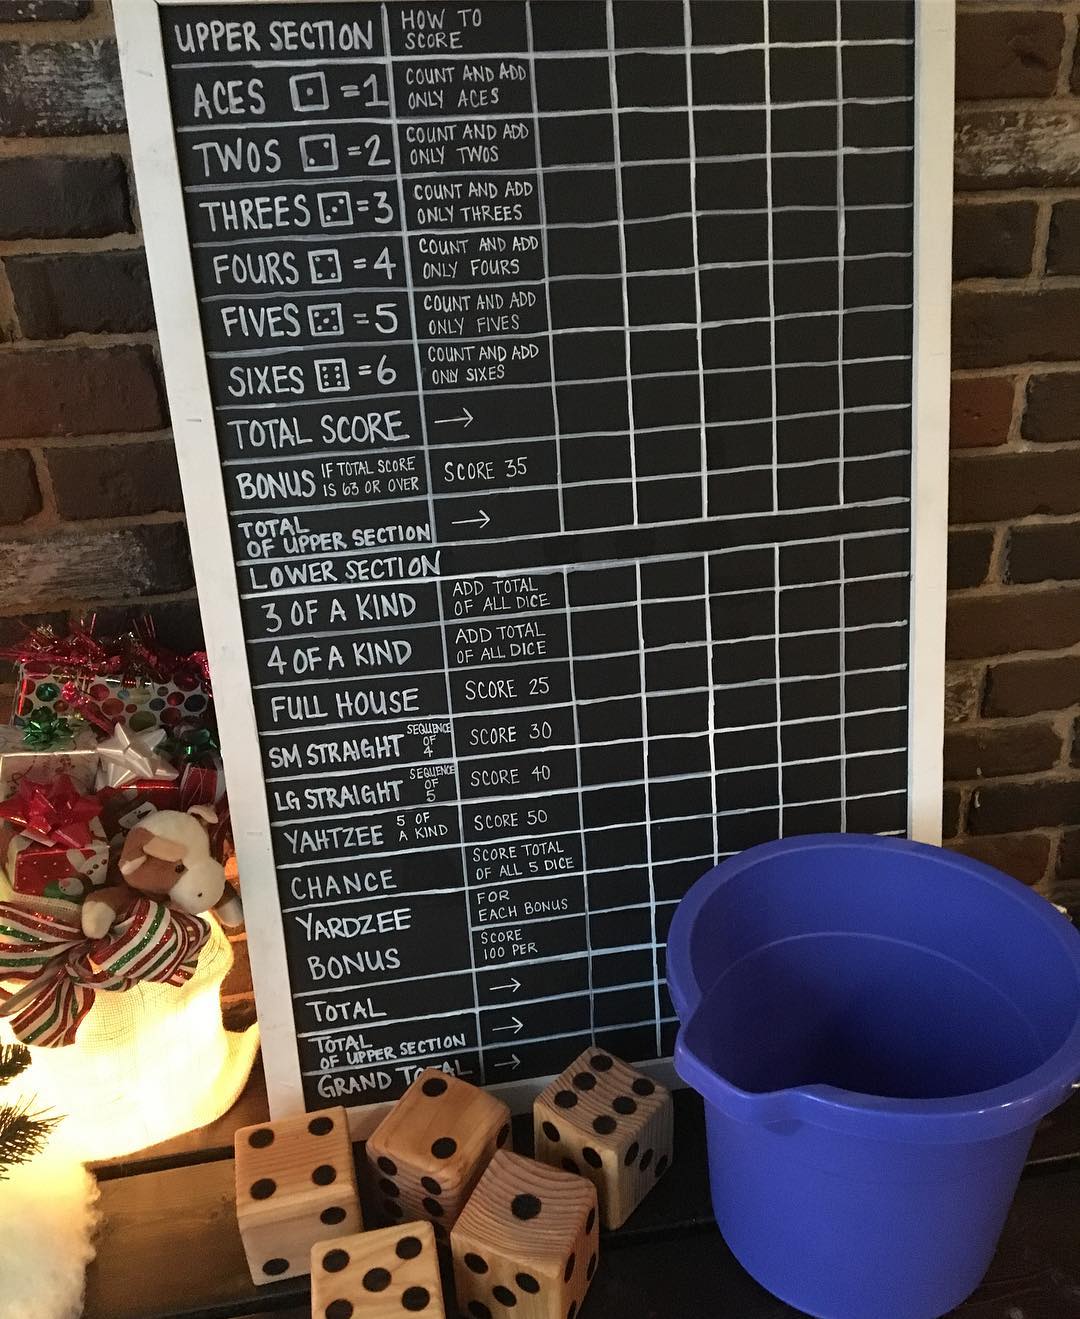 Chalkboard scoreboard. Photo by Instagram user @customschmidt617